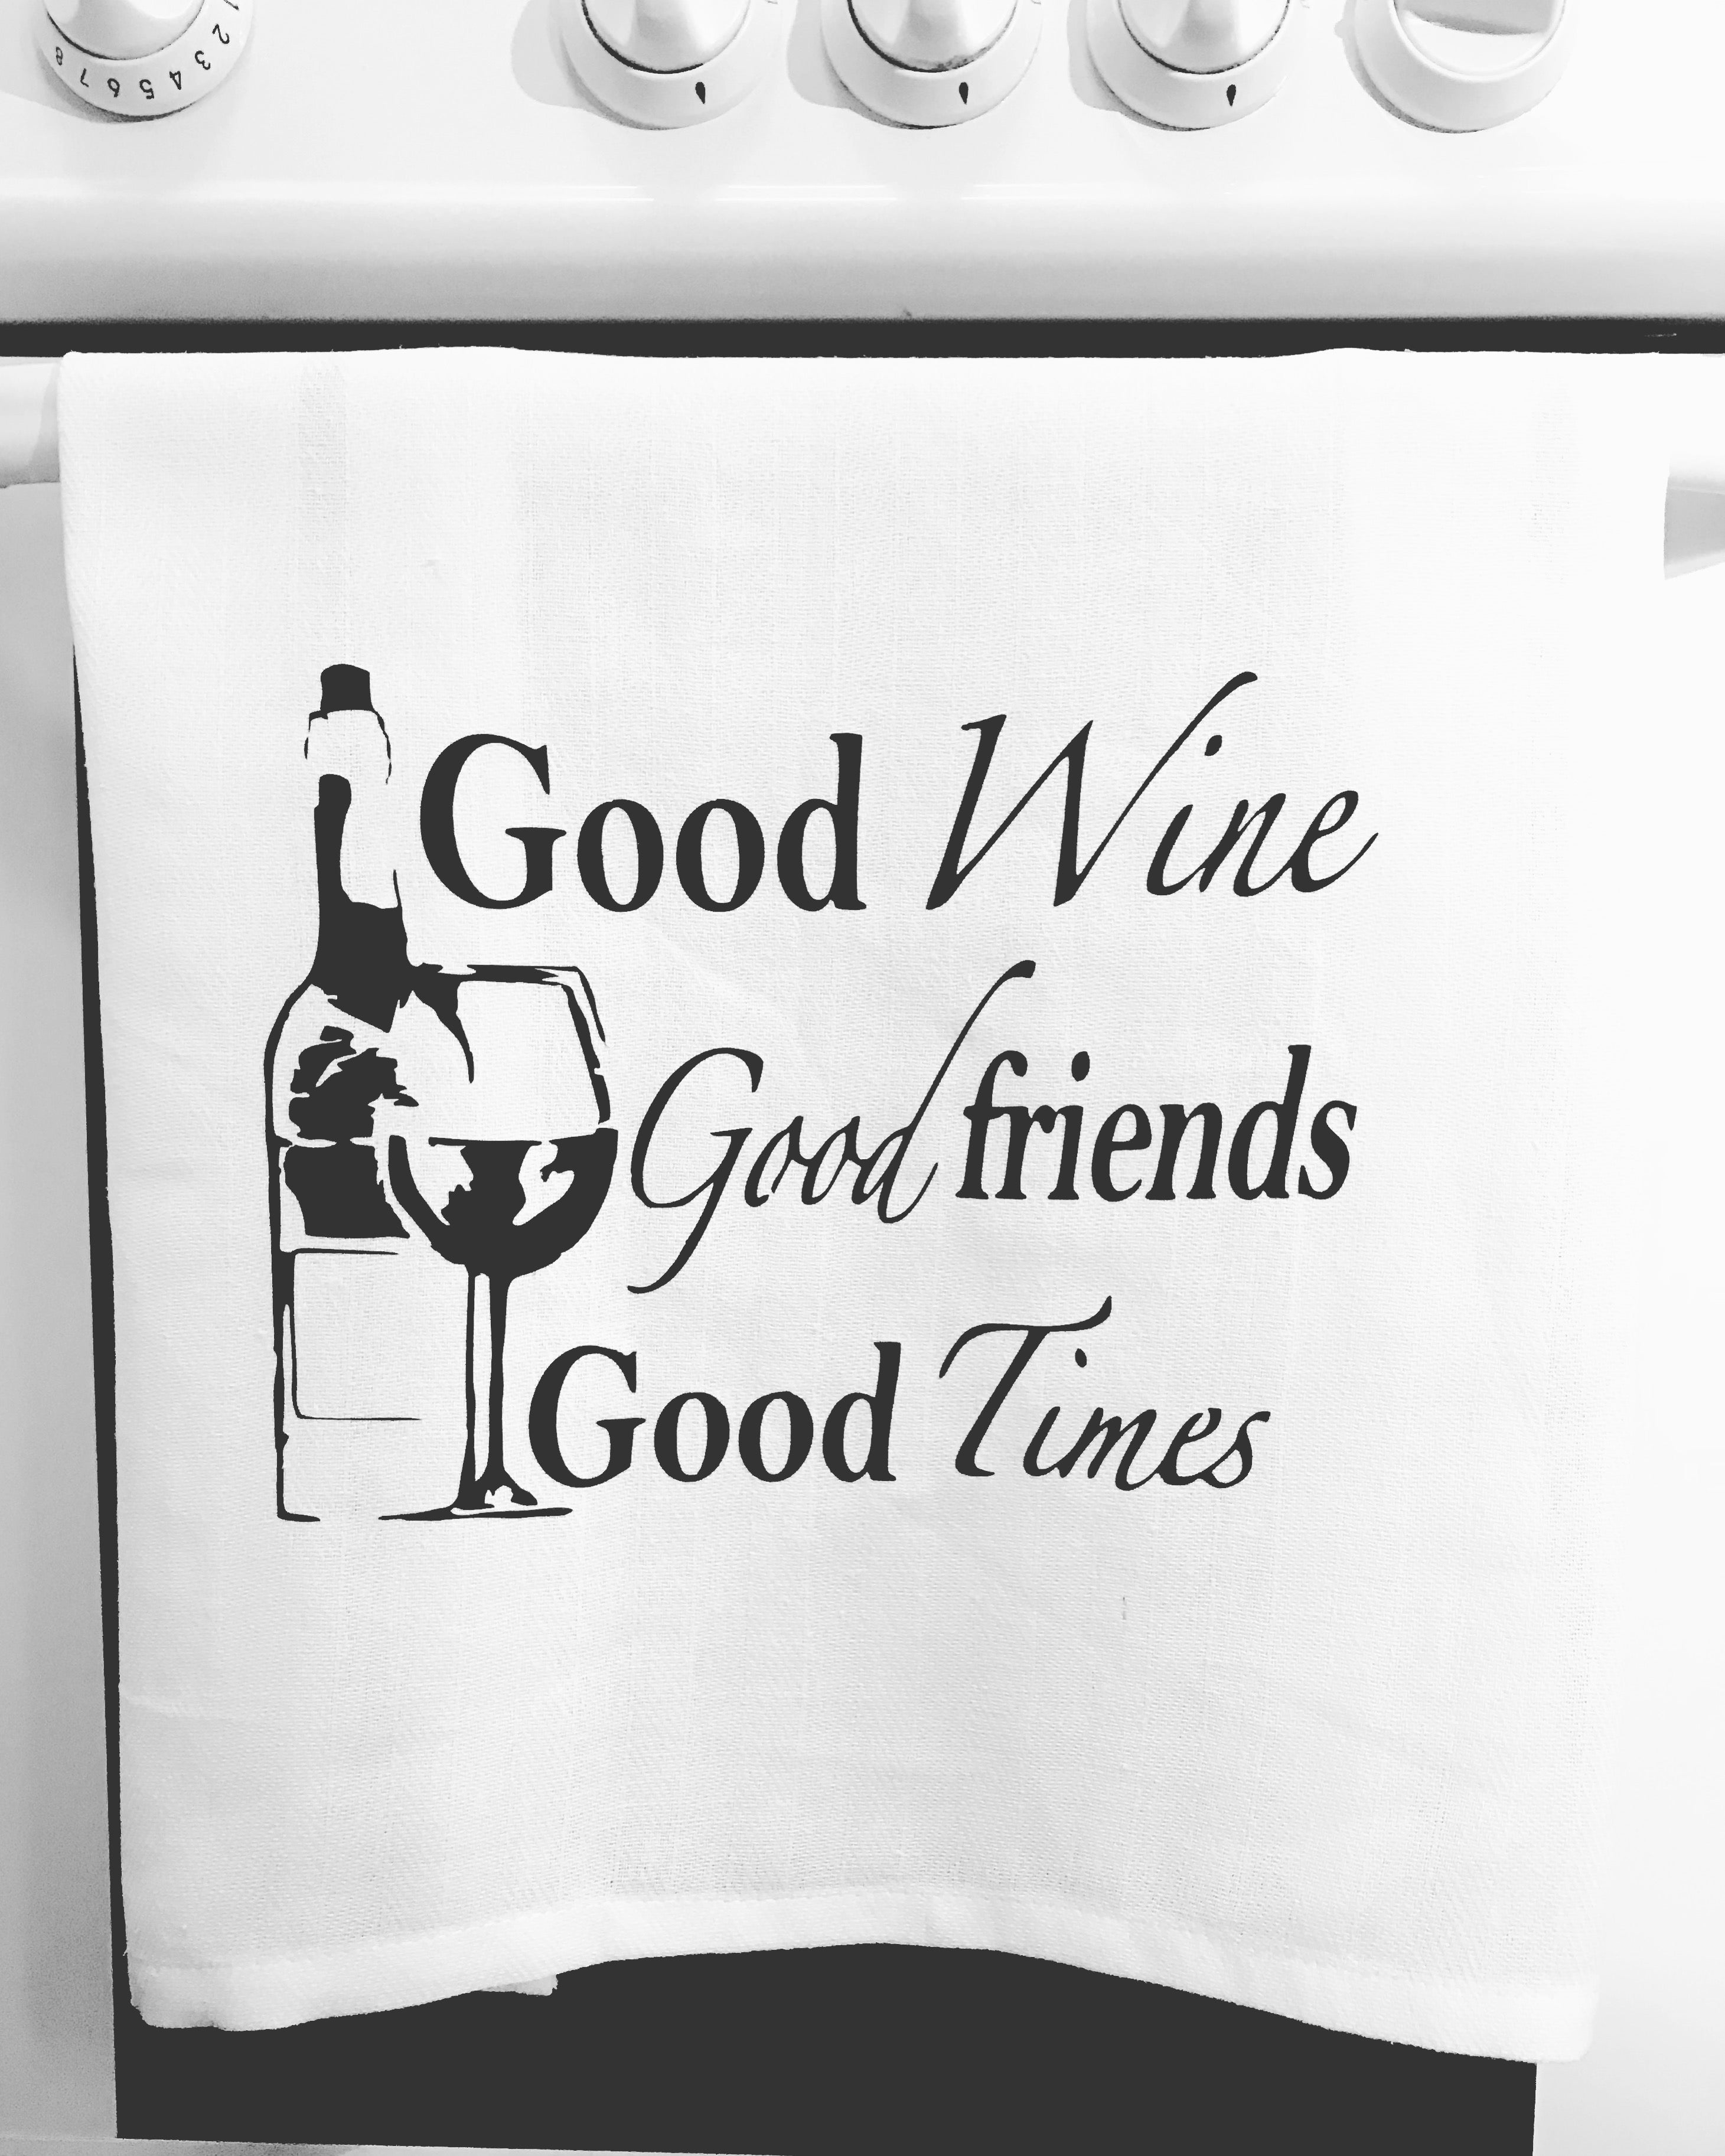 Good Wine Good friends Good Times kitchen tea towel-kitchen towels-DiamondsKT